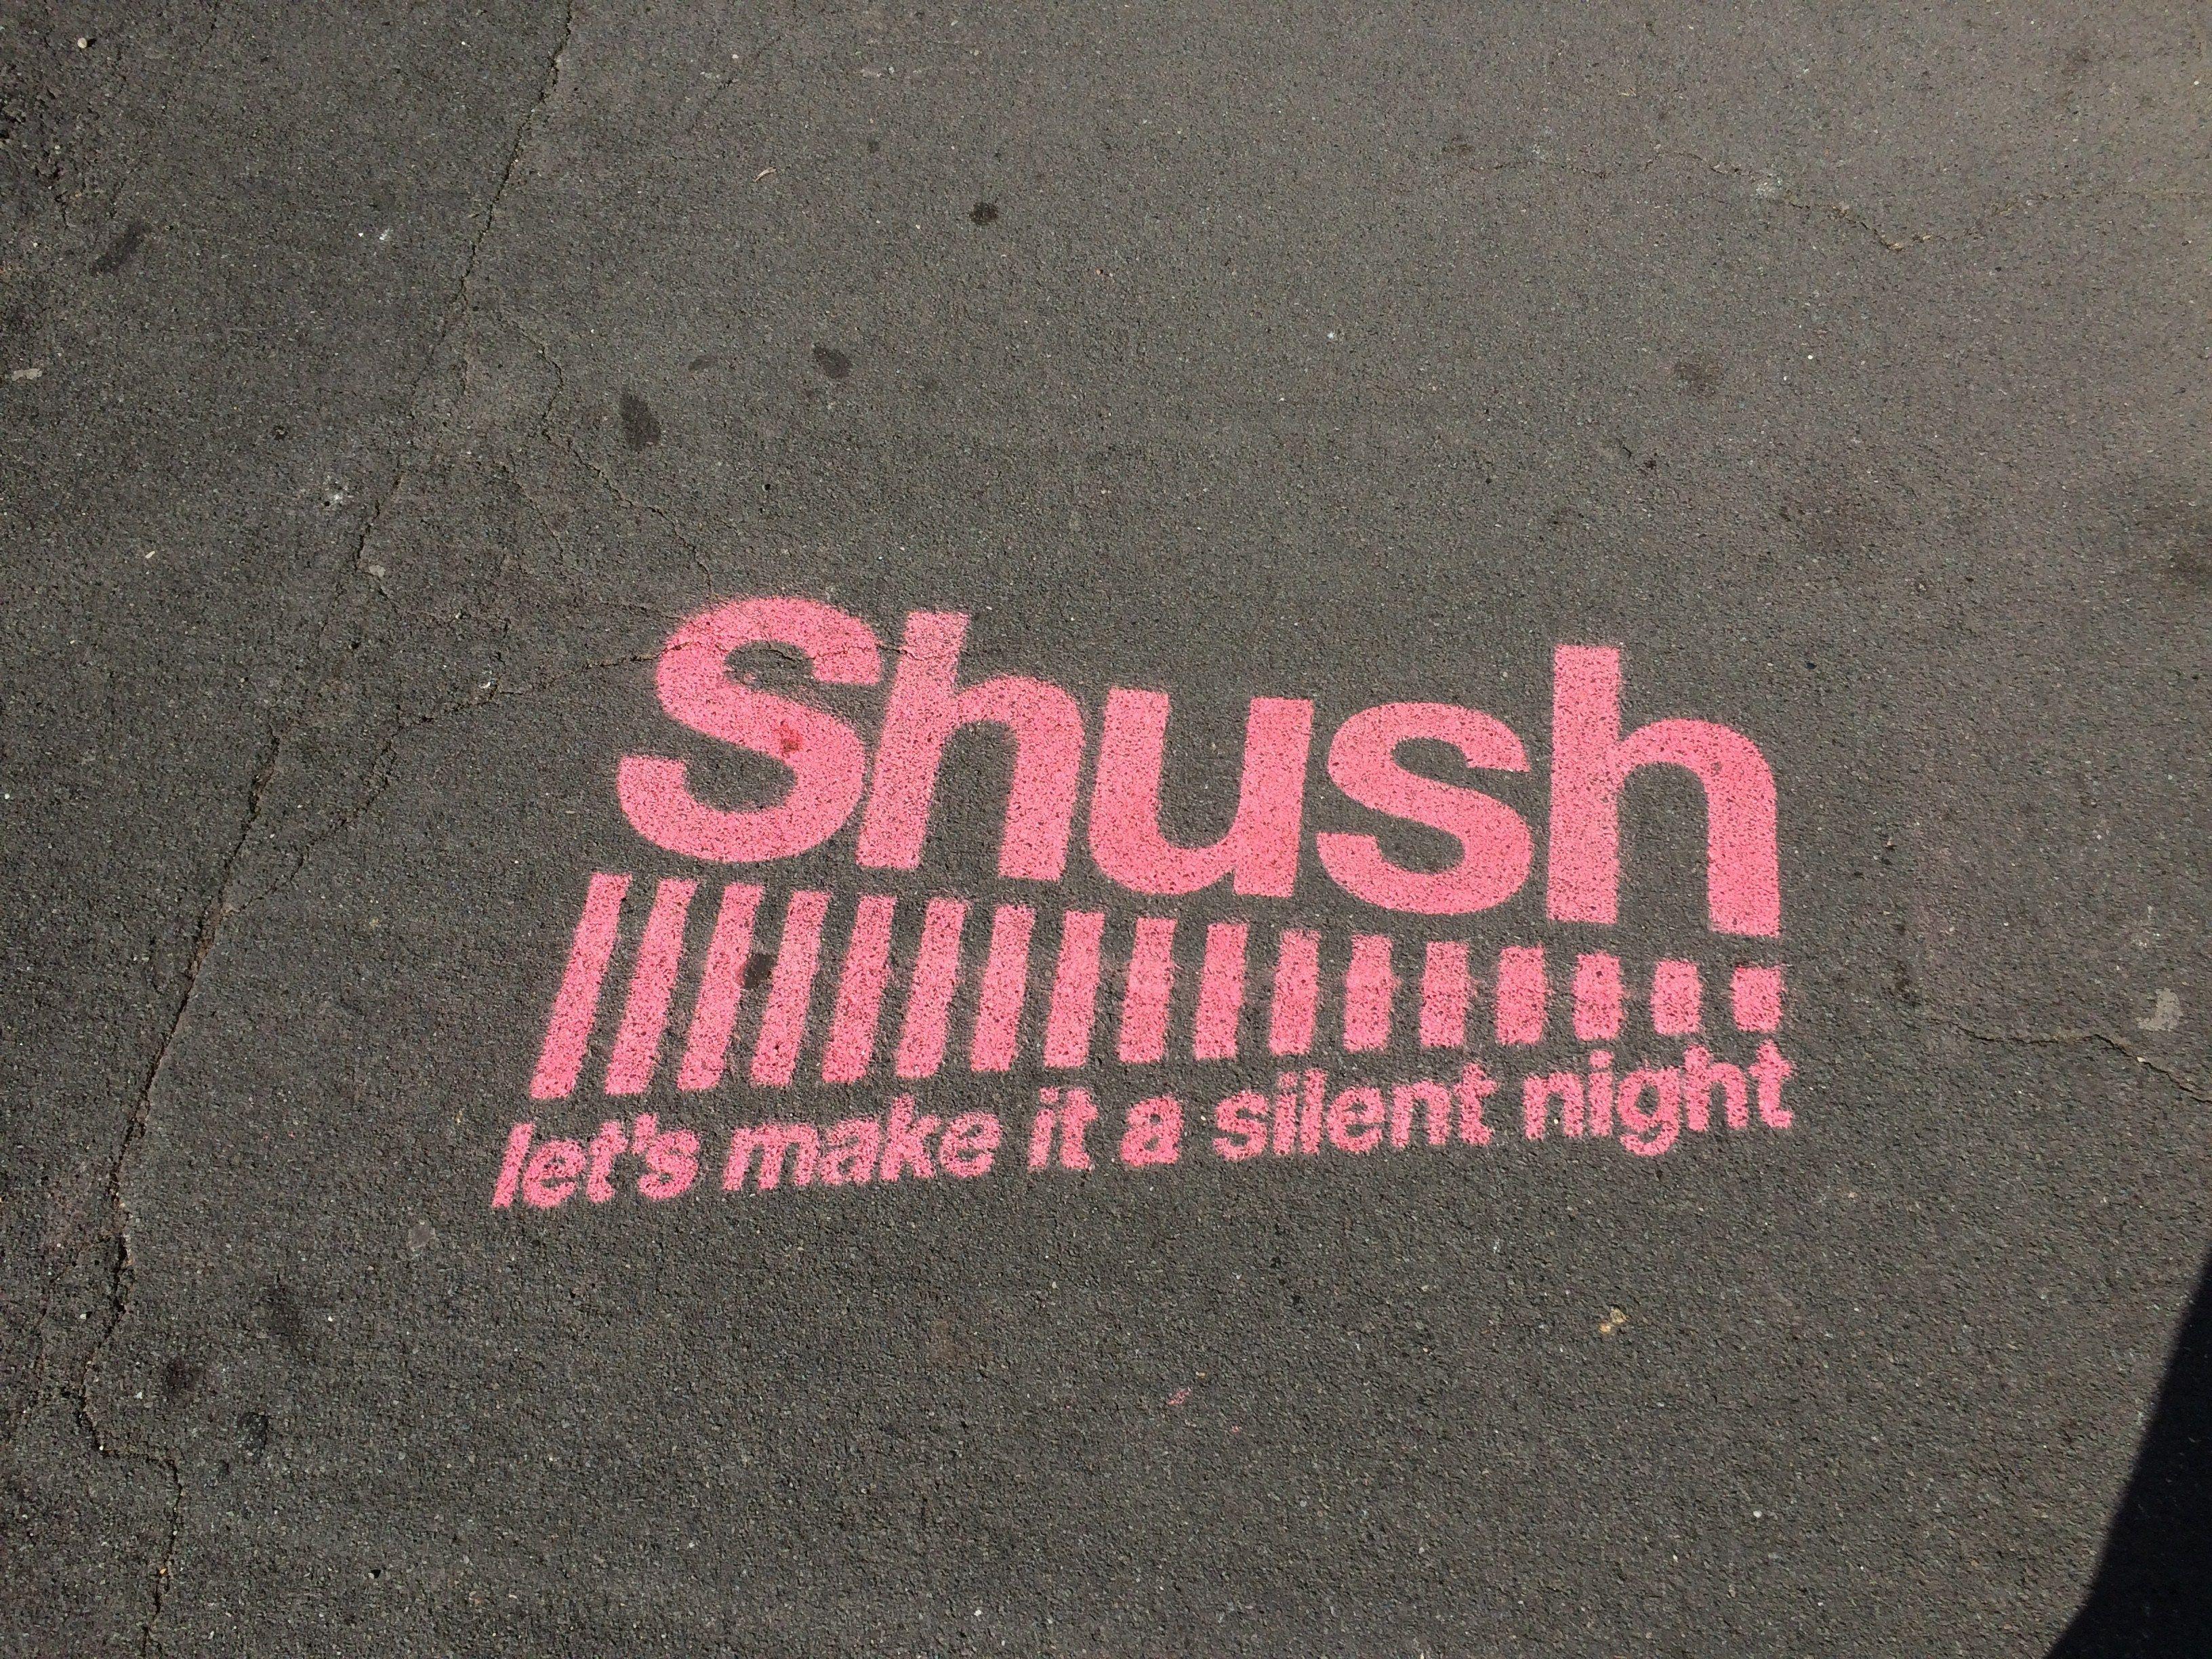 Shush Logo - Shush campaign gets well underway